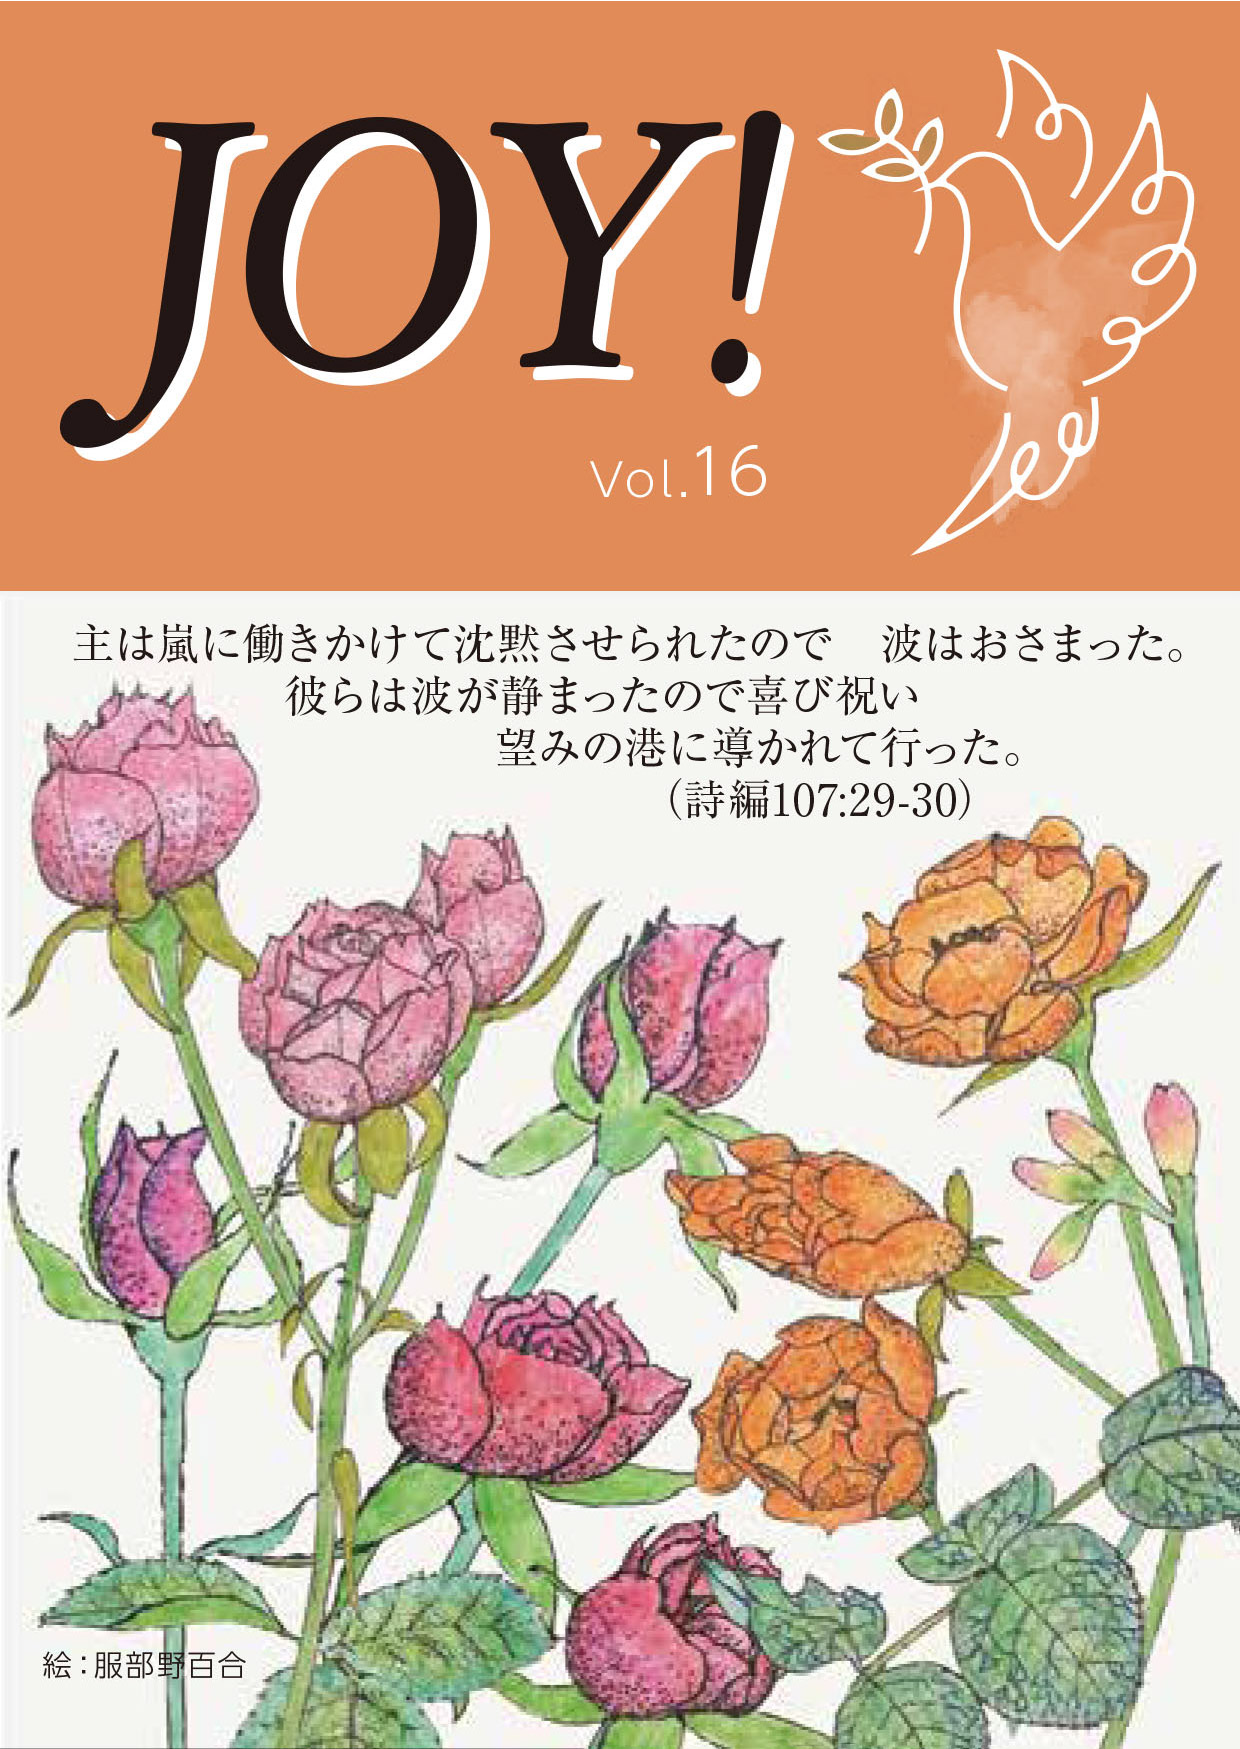 季刊紙 『JOY!』秋号配布中(Vol.16)